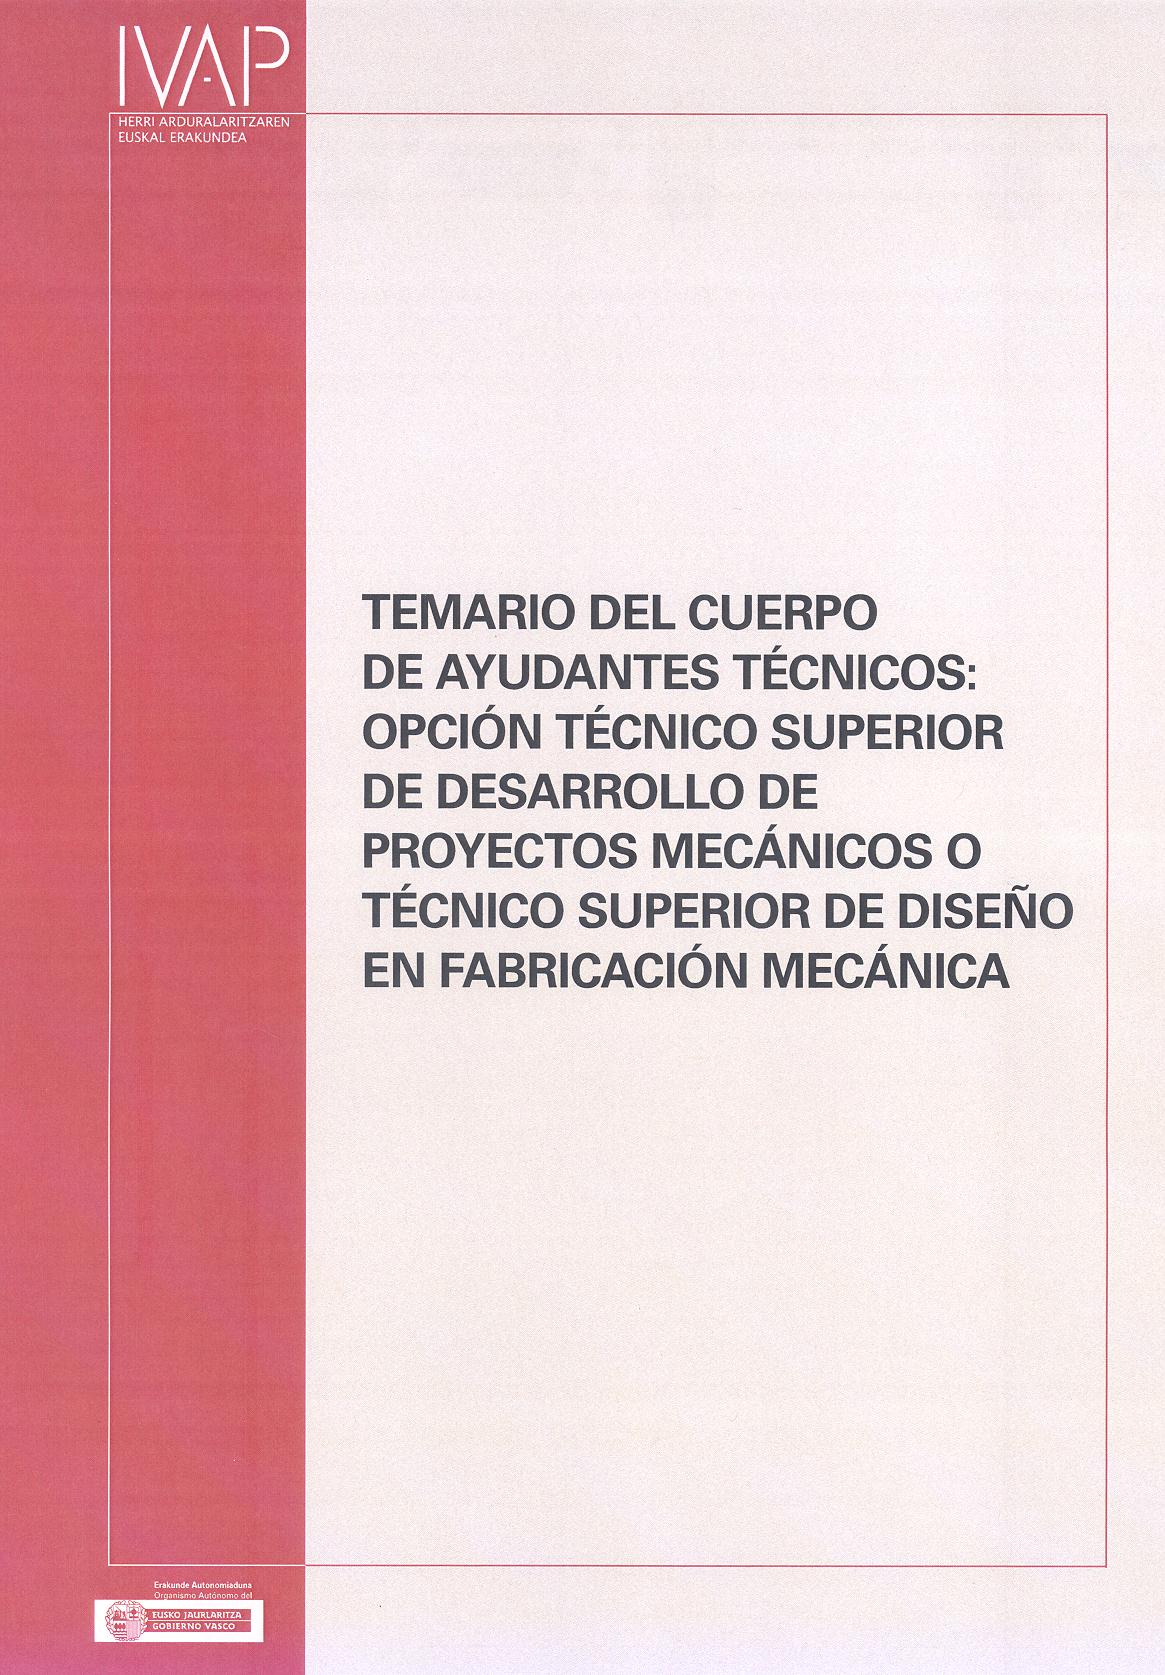 Temario del Cuerpo de Ayundantes Técnicos: Opción Técnico Superior de desarrollo de proyectos mecánicos o Técnico Superior de diseño de fabricación mecánica